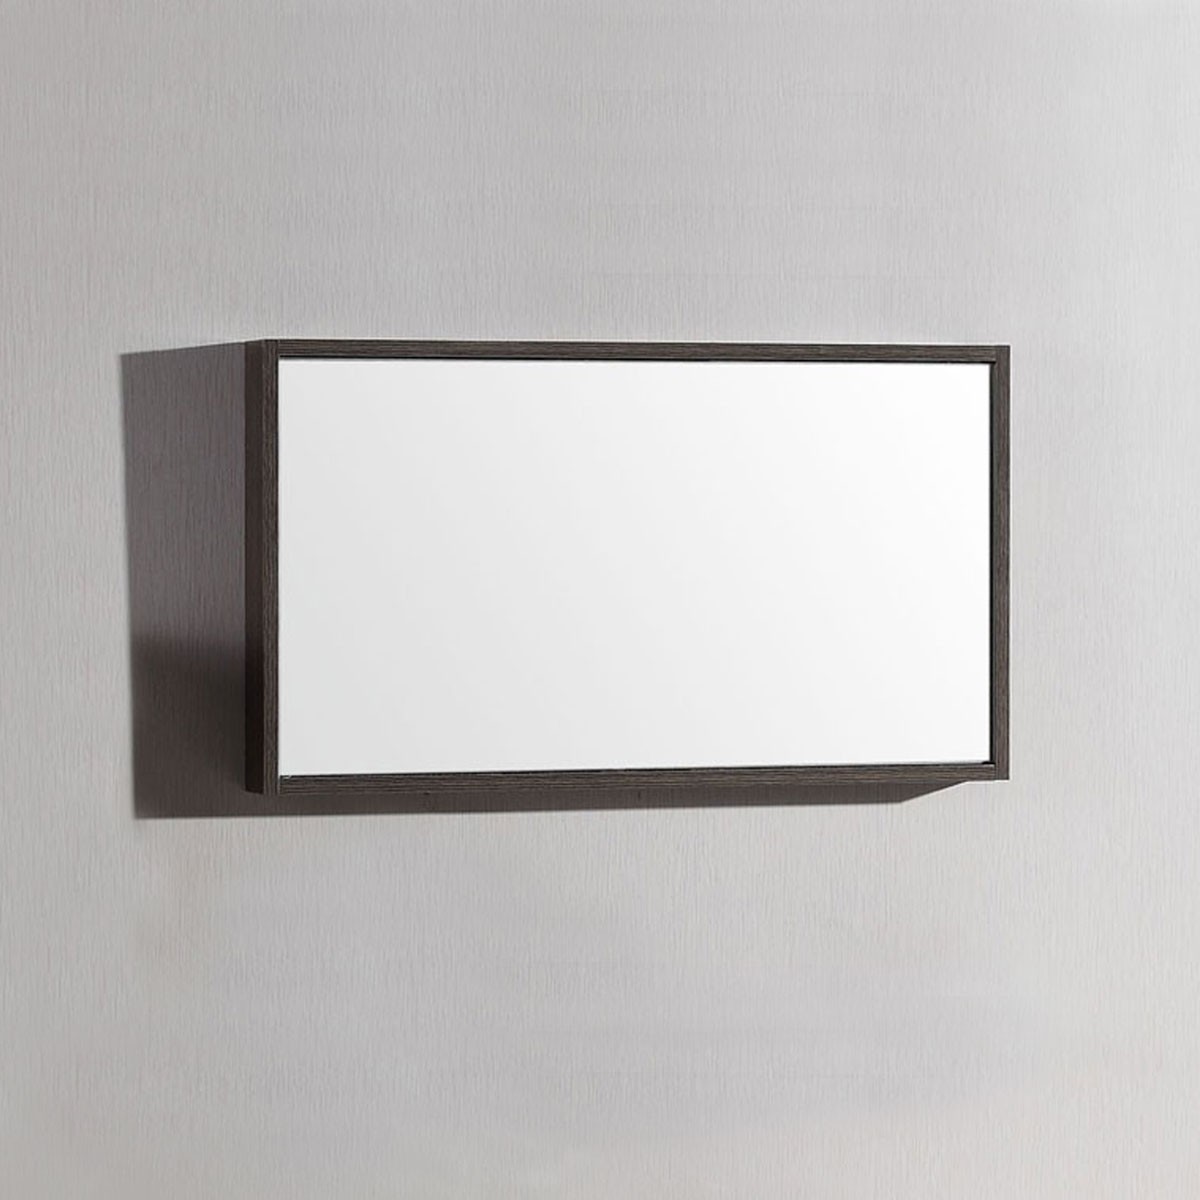 32 x 18 In. Bathroom Vanity Mirror (DK-T5165B-M)